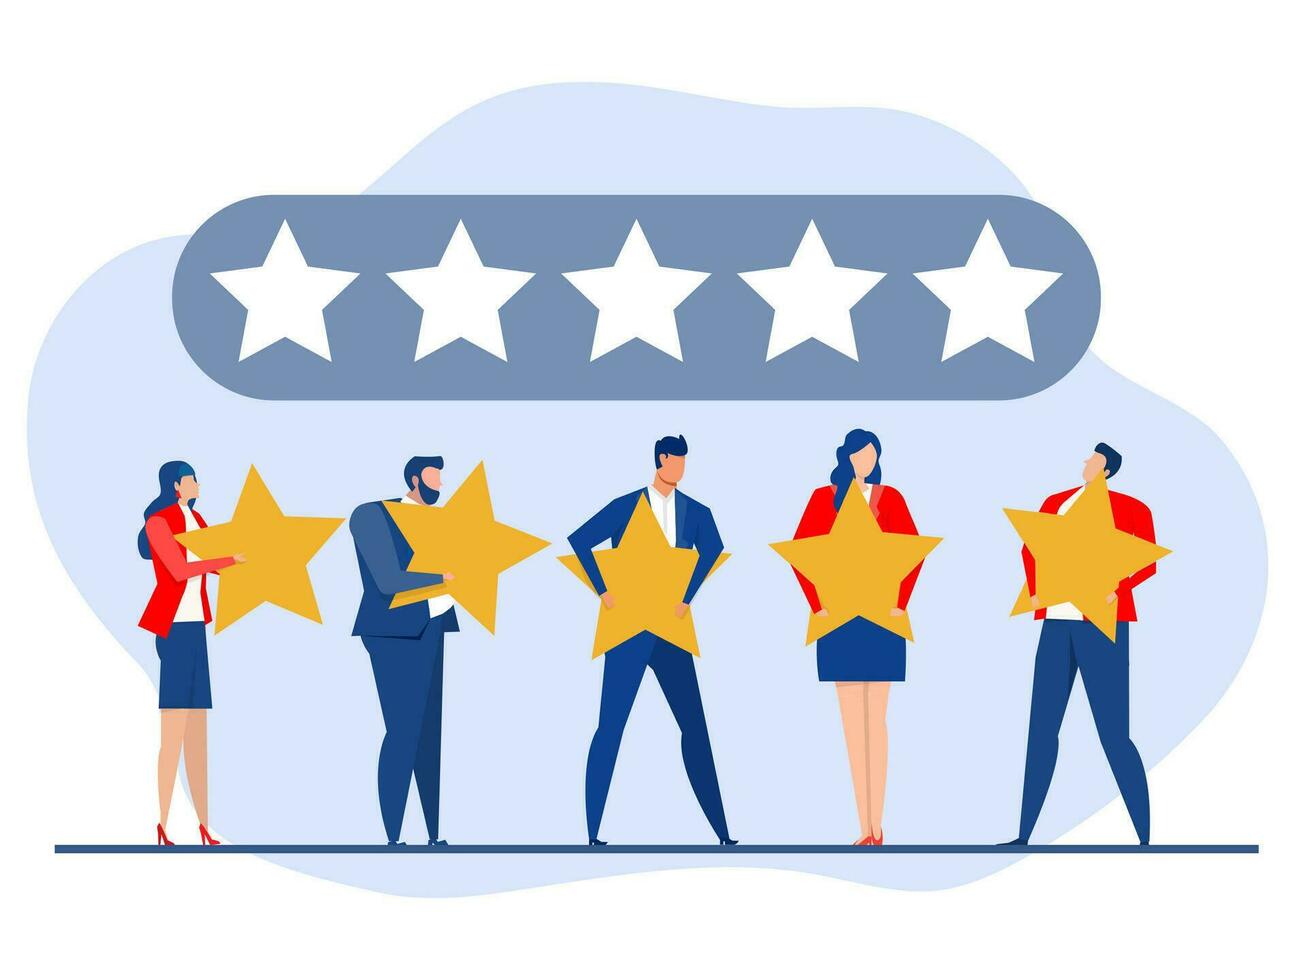 vijf ster beoordeling positief feedback, mensen Holding recensie sterren klanten beoordeling cliënt terugkoppeling tevredenheid niveau concept, ondersteunend Product of onderhoud vector illustratie